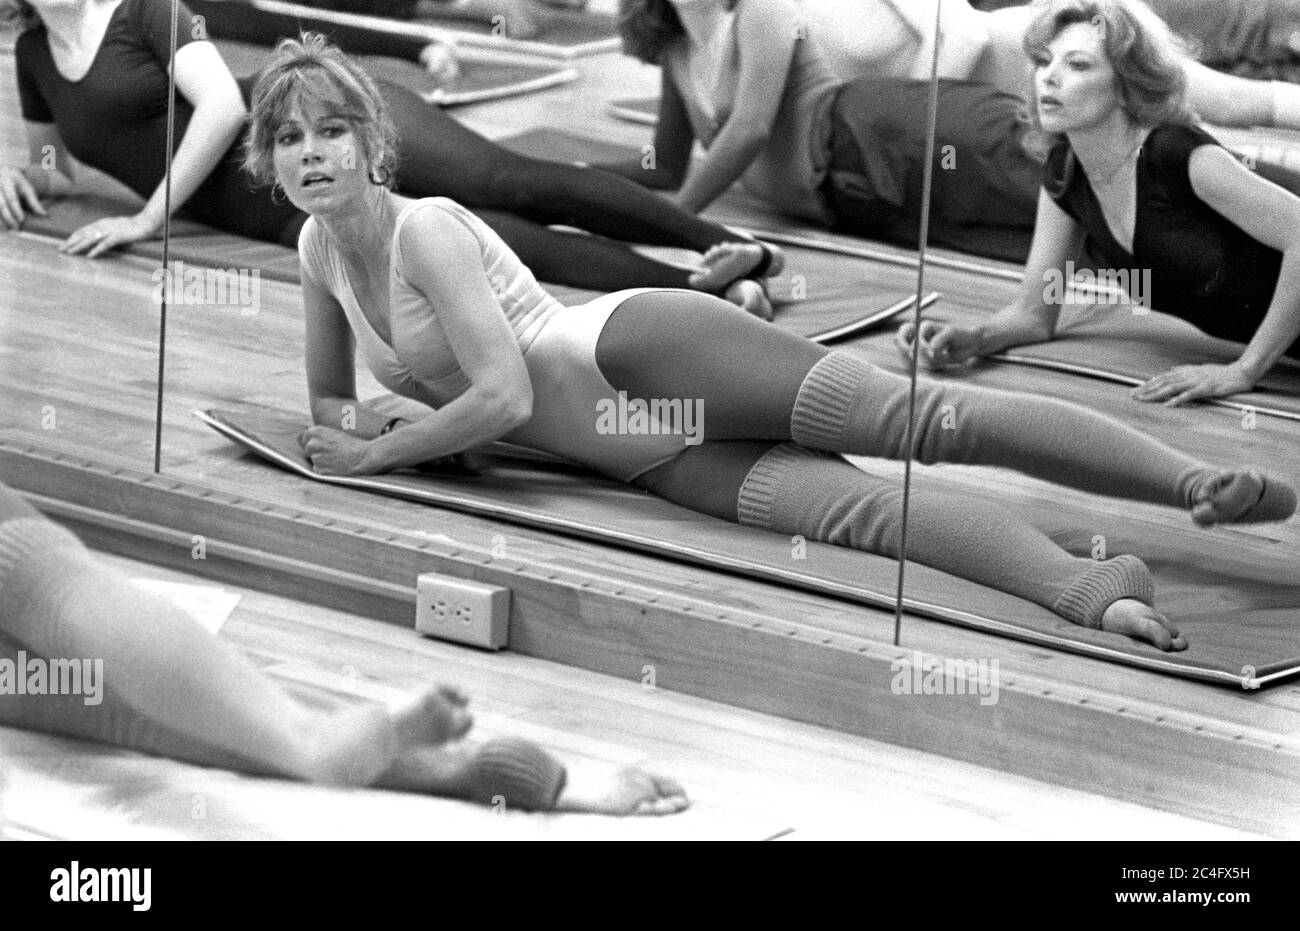 jane fonda workout 1980s